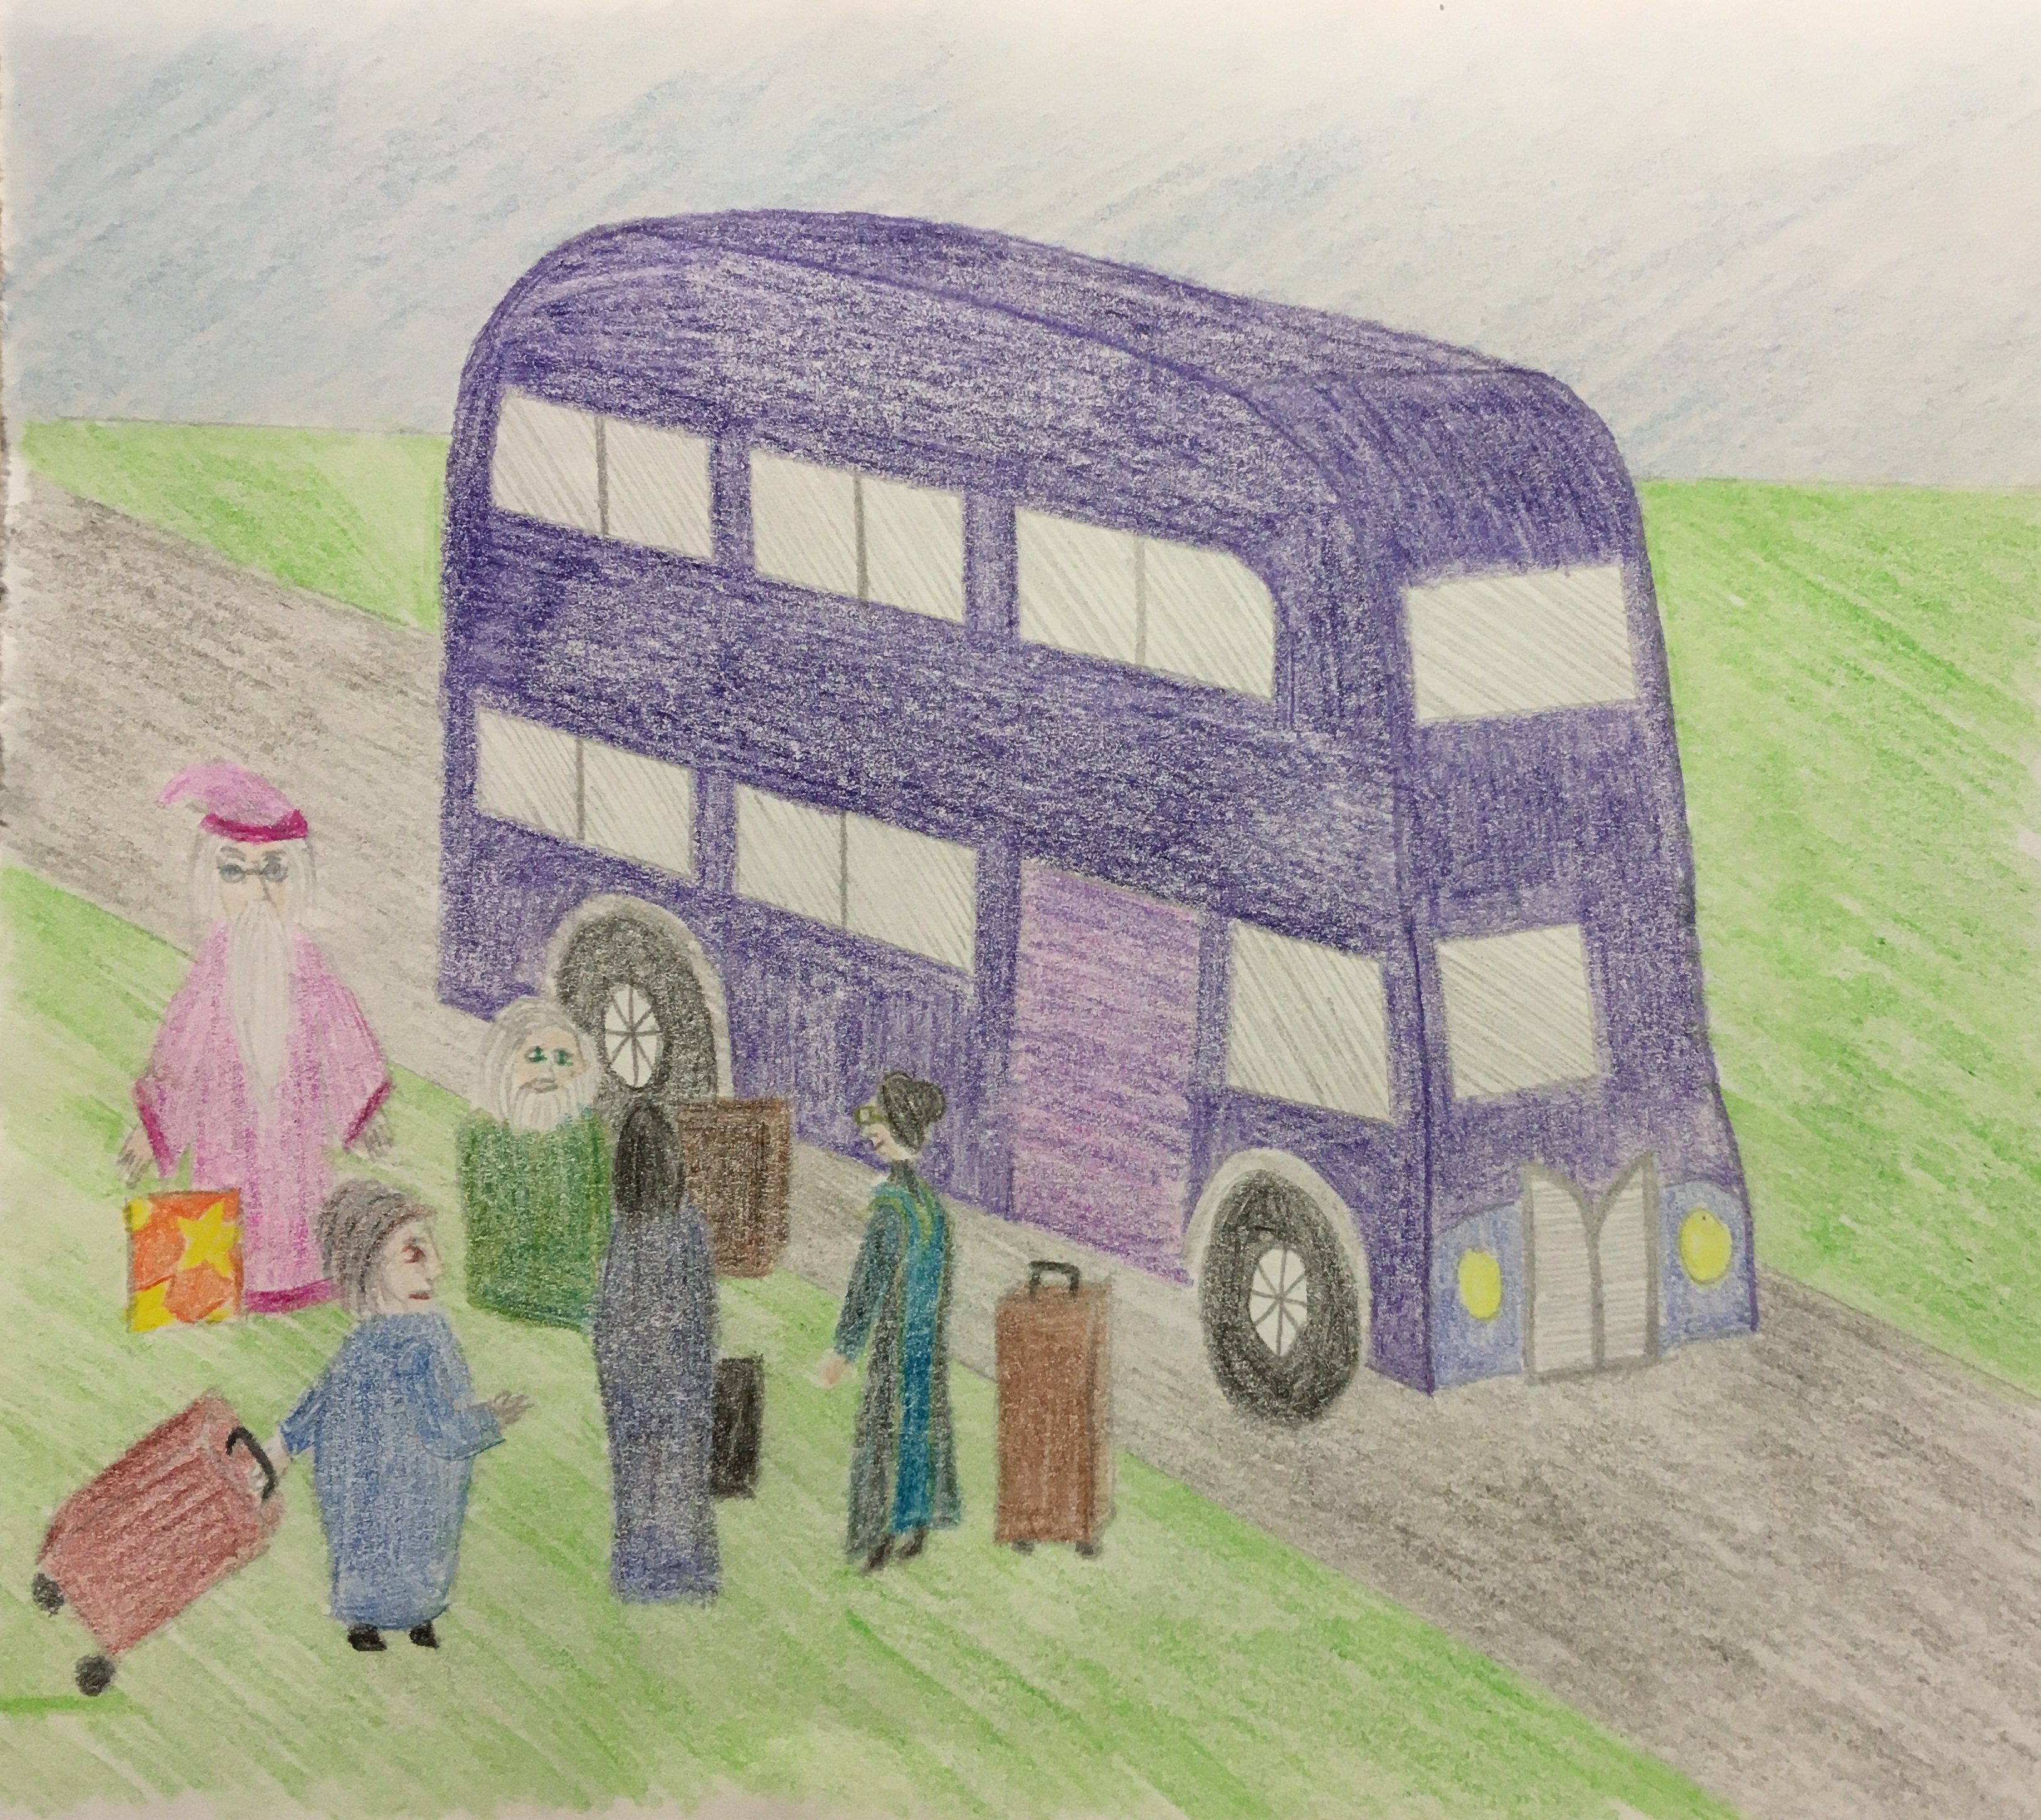 Die Lehrer stehen, in einer Gruppe mit Reiseumhang gekleidet und den Koffern neben sich, vor einem lilanen Doppeldeckerbus, dem 'Fahrenden Ritter'.